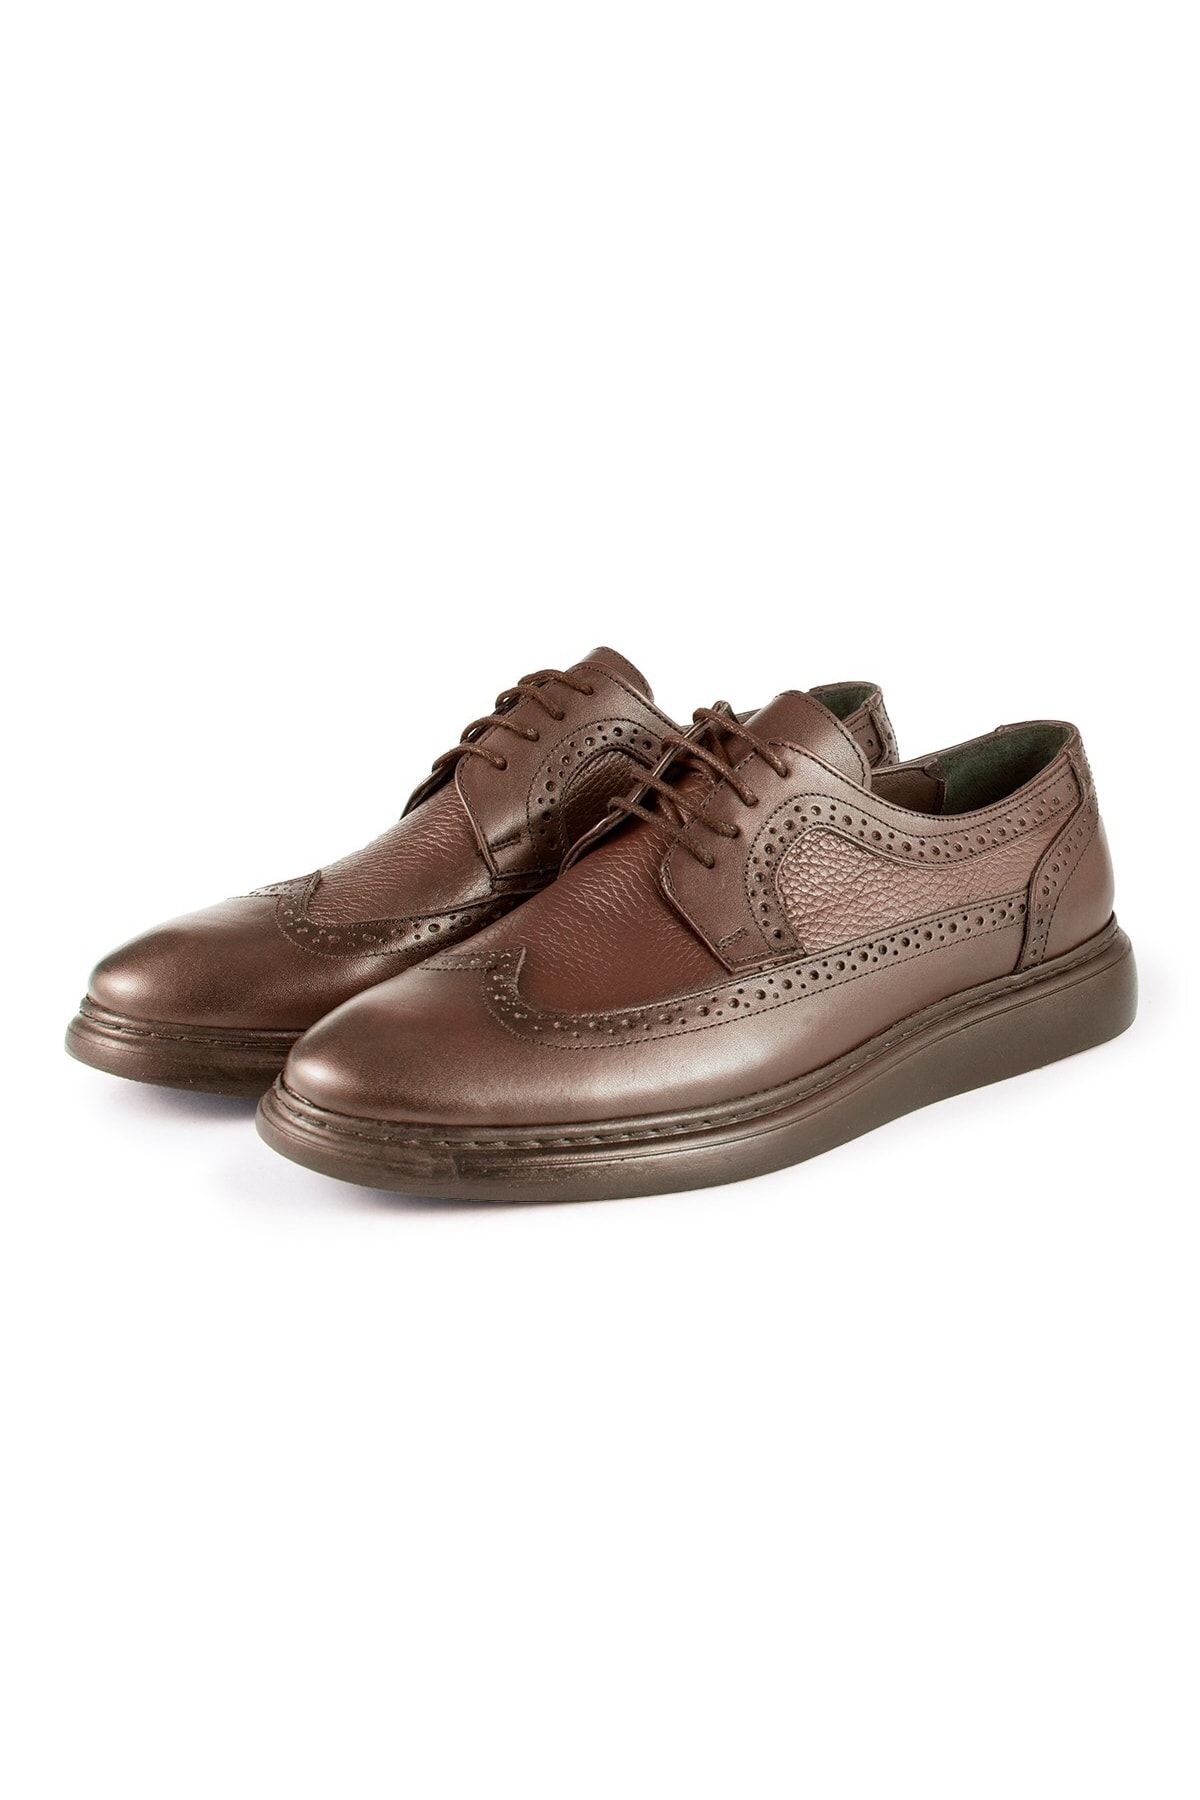 Ducavelli Lusso Hakiki Deri Erkek Günlük Klasik Ayakkabı, Hakiki Deri Klasik Ayakkabı, Derby Klasik